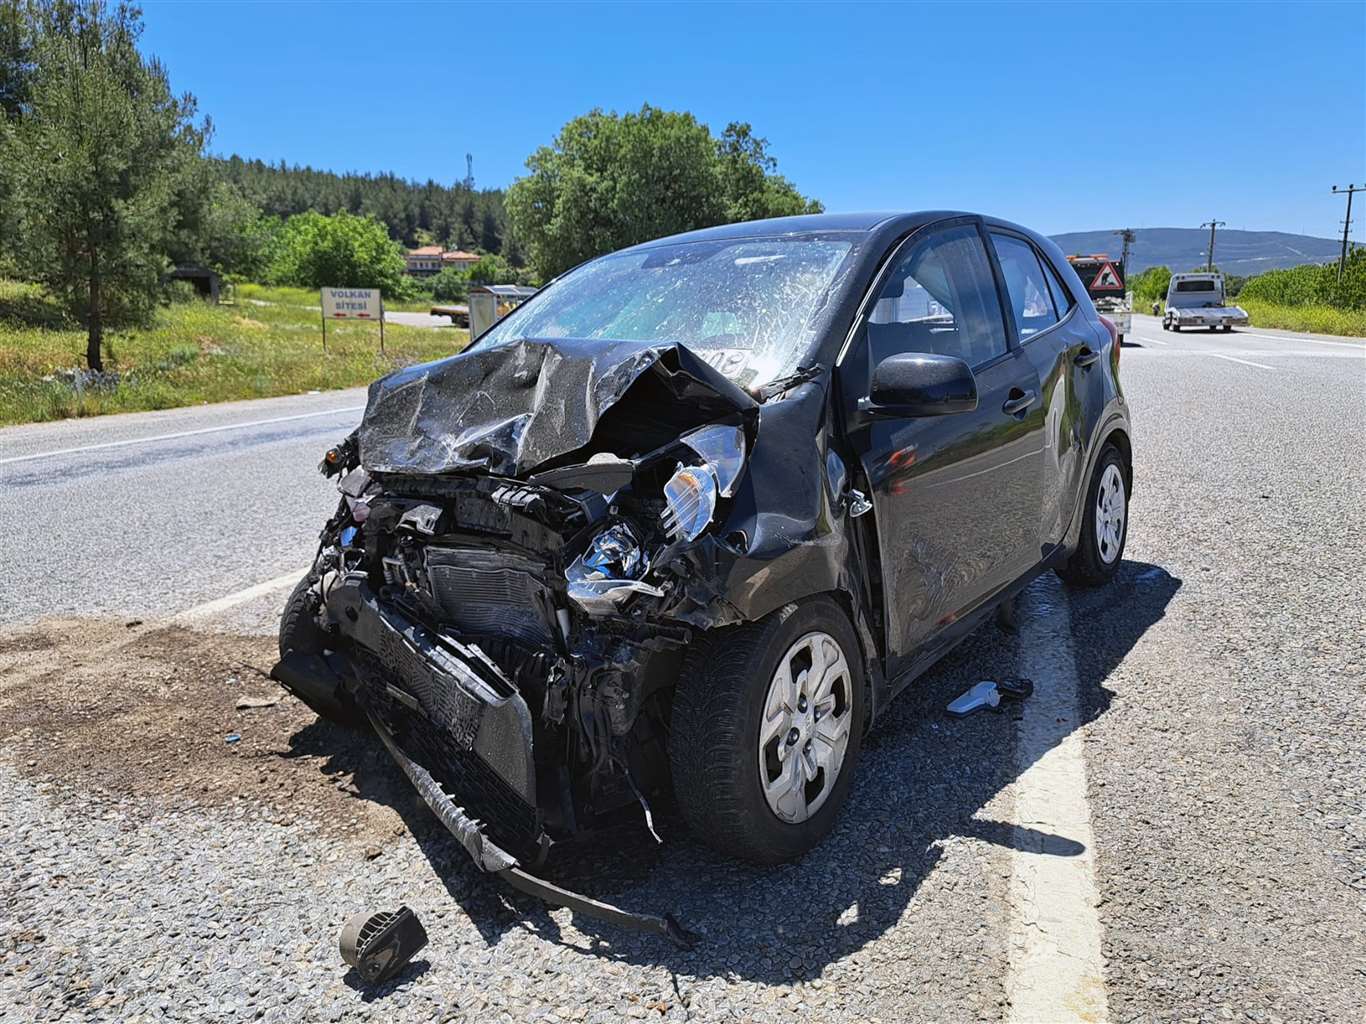 Menteşe'de kaza: 1 kişi hayatını kaybetti, 1 kişi yaralandı haberi